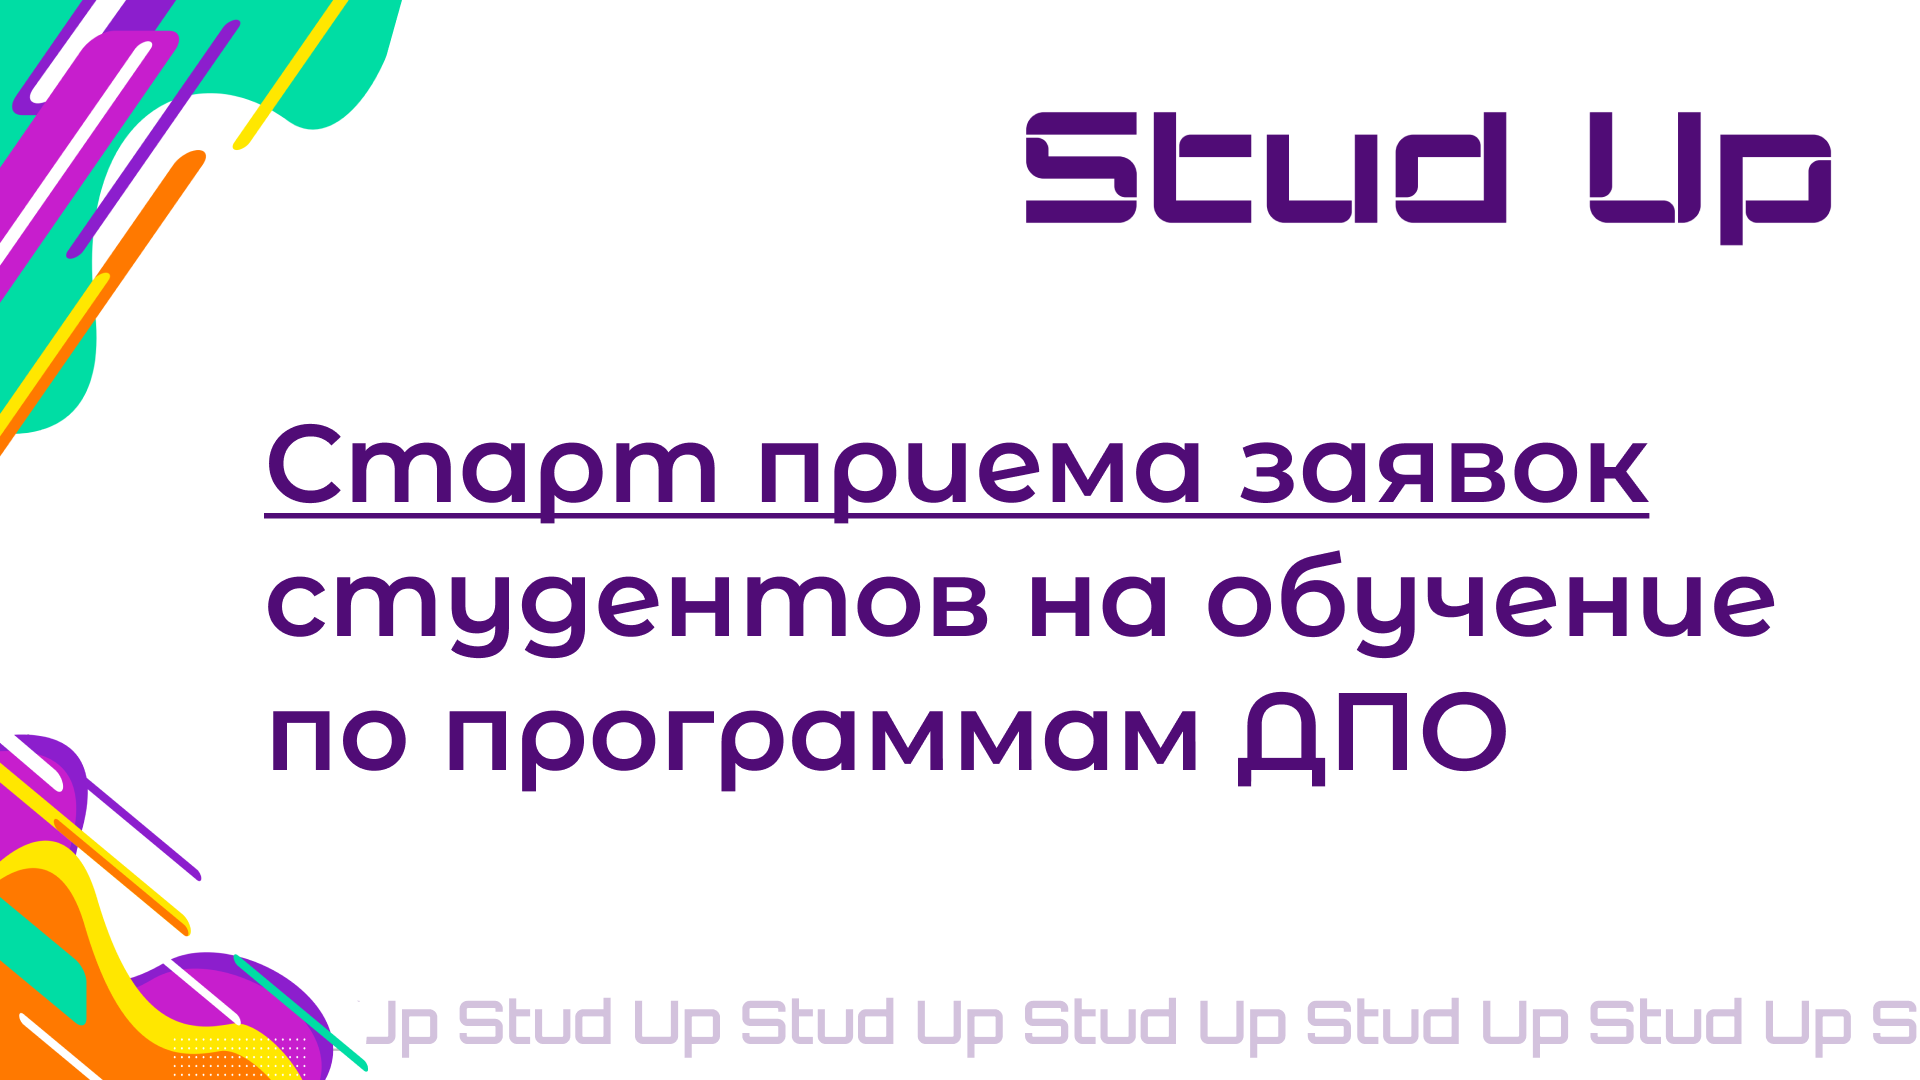 Проект "StudUp"